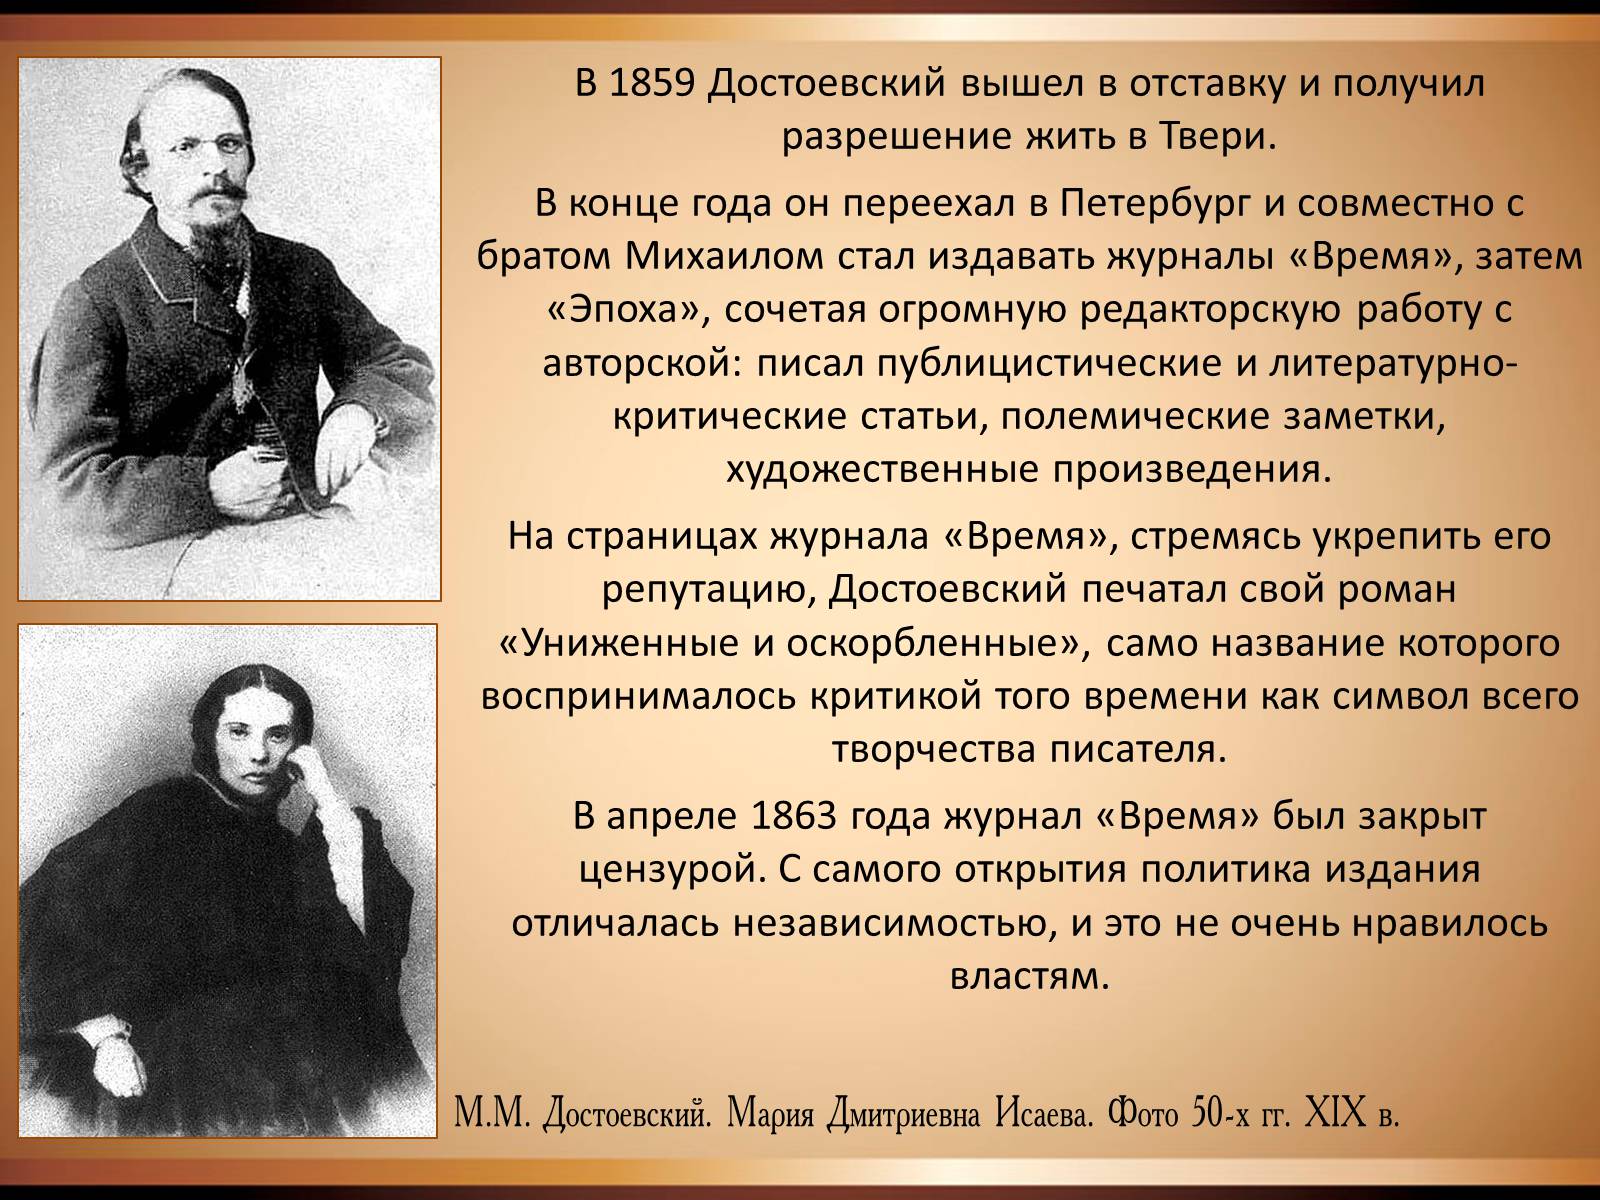 Достоевский краткая история. Достоевский 1859 год.